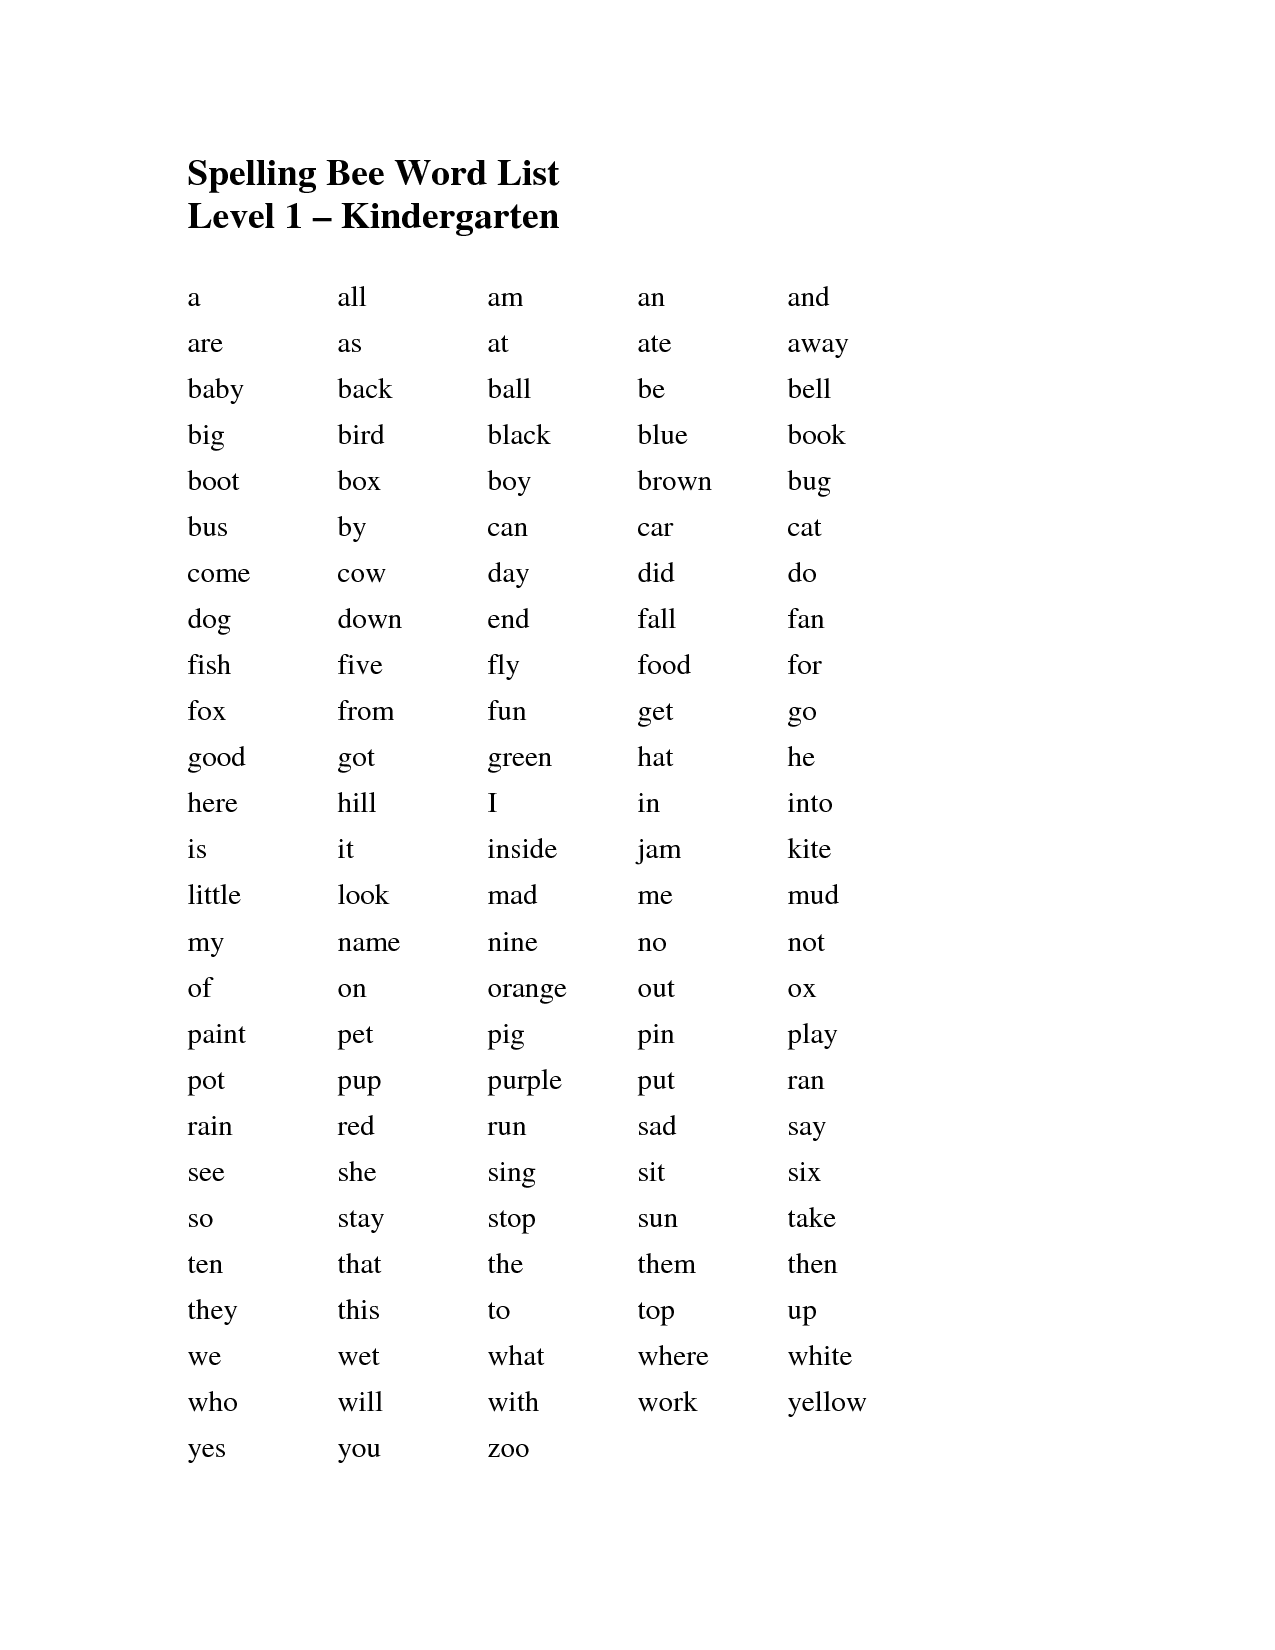 Spelling Bee Word List Kindergarten